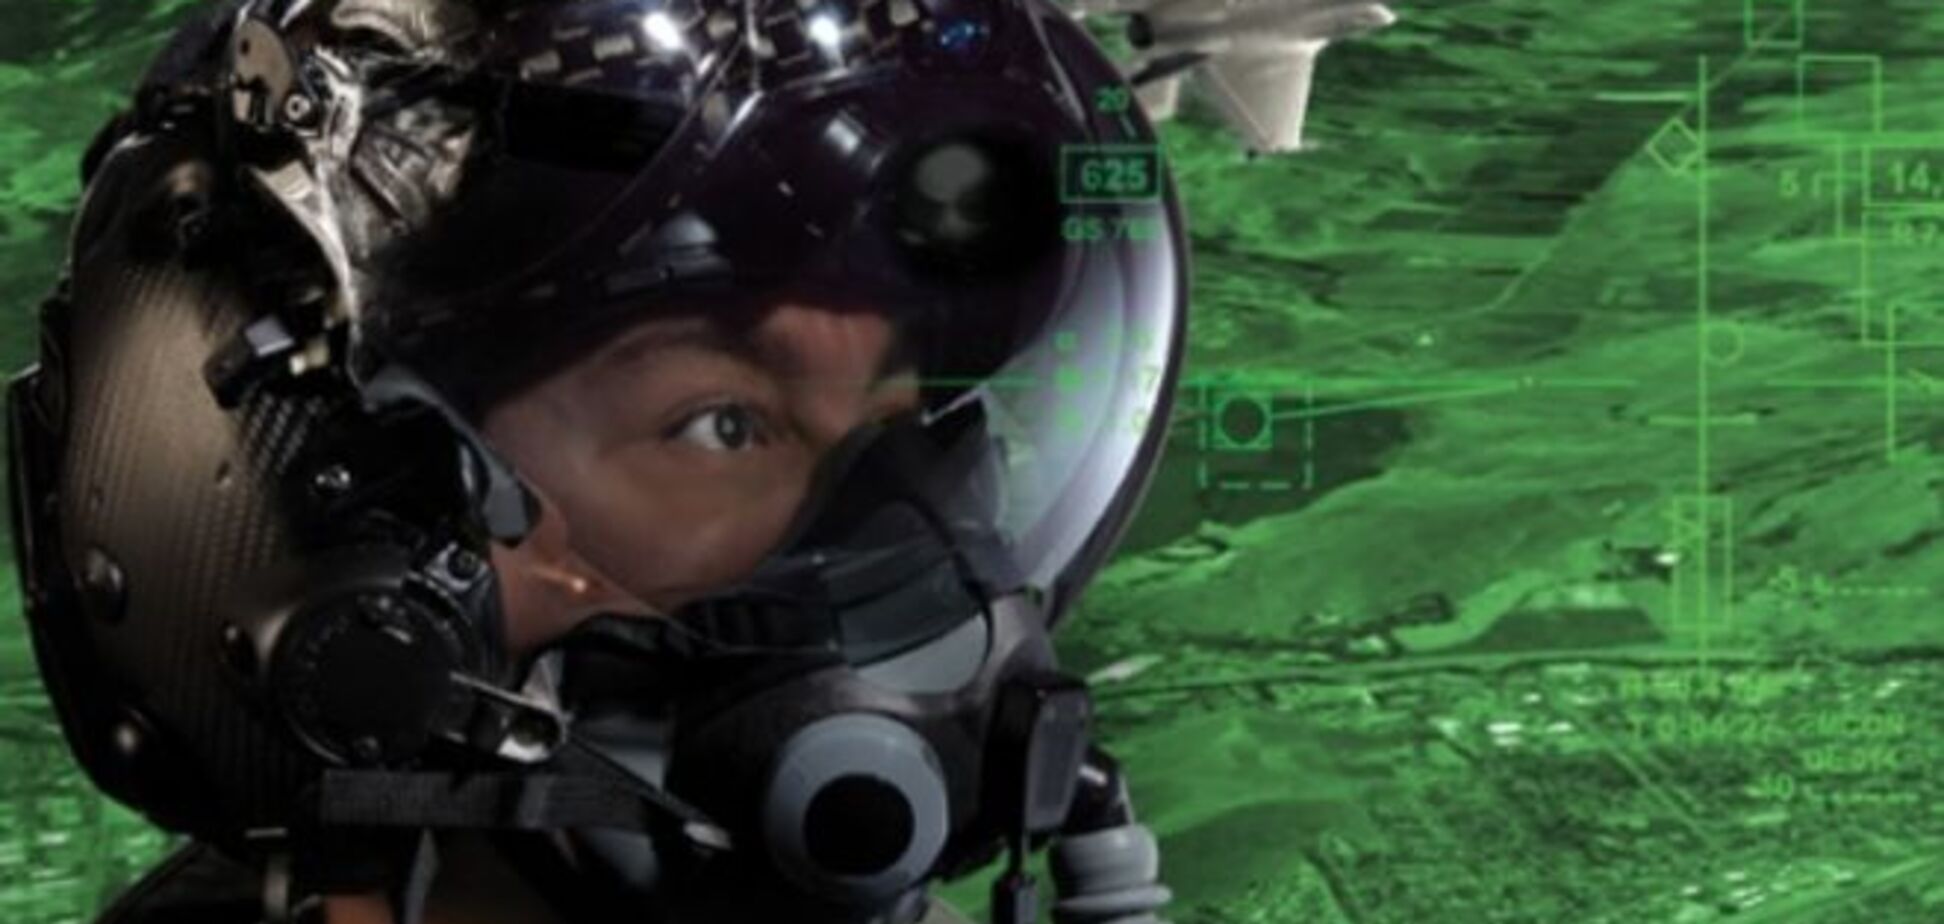 Создан шлем, который позволит пилоту видеть сквозь самолет: видеофакт